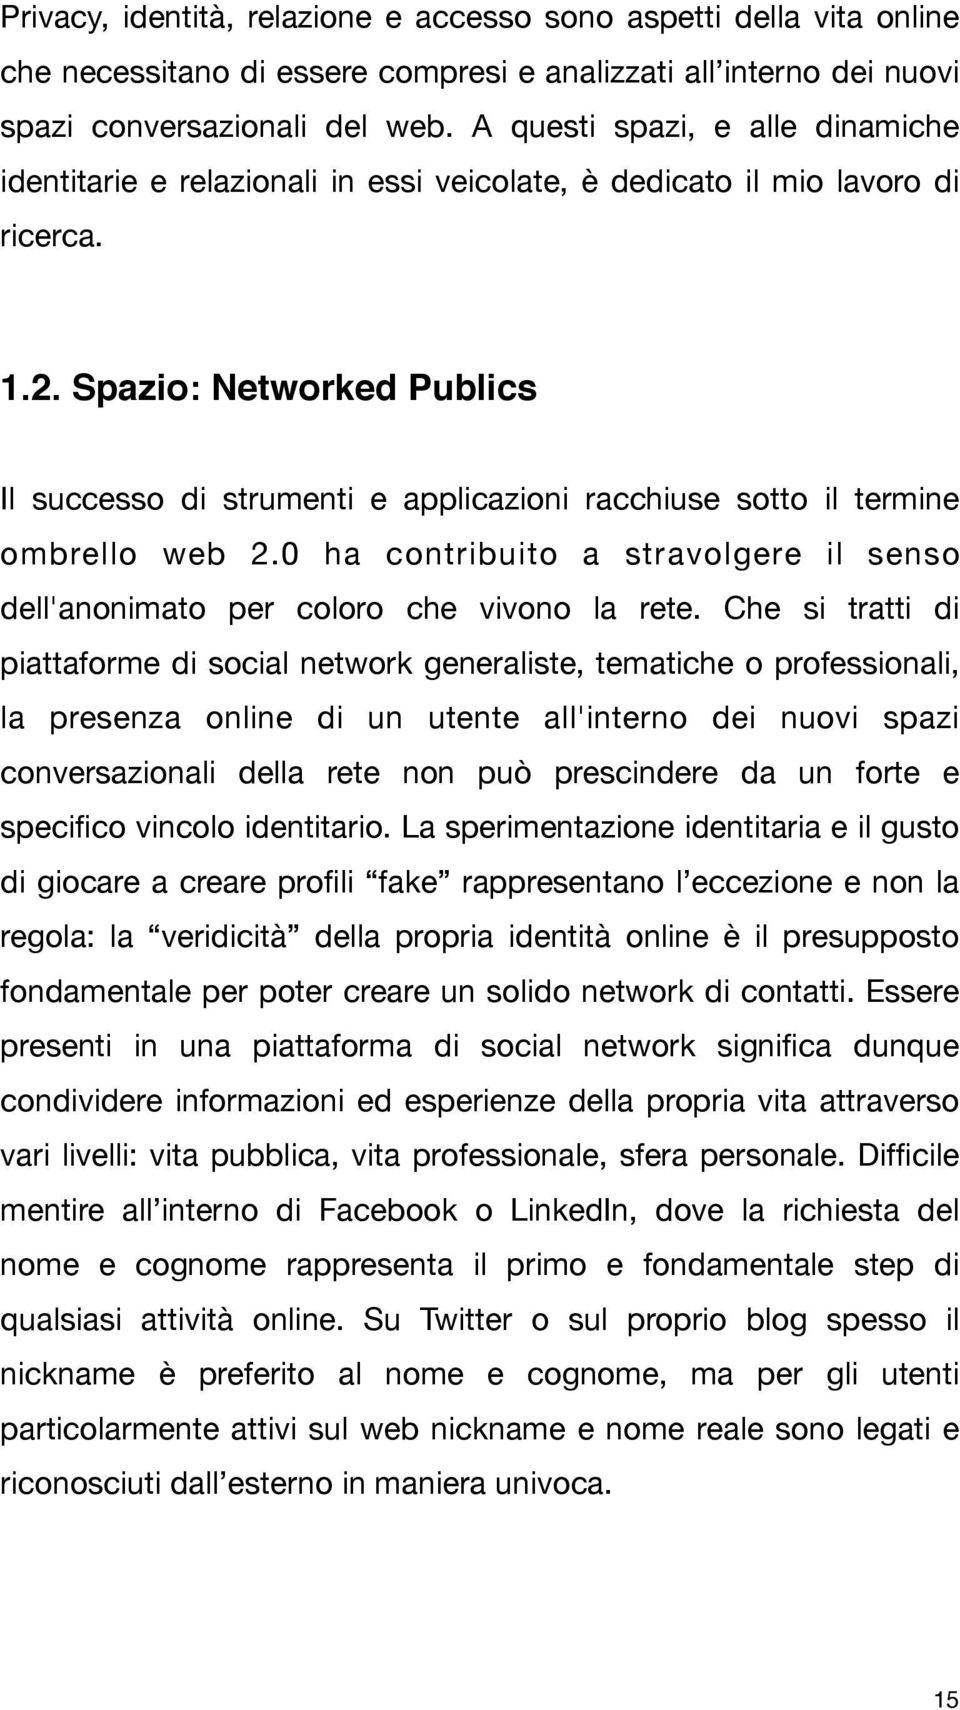 Spazio: Networked Publics Il successo di strumenti e applicazioni racchiuse sotto il termine ombrello web 2.0 ha contribuito a stravolgere il senso dell'anonimato per coloro che vivono la rete.